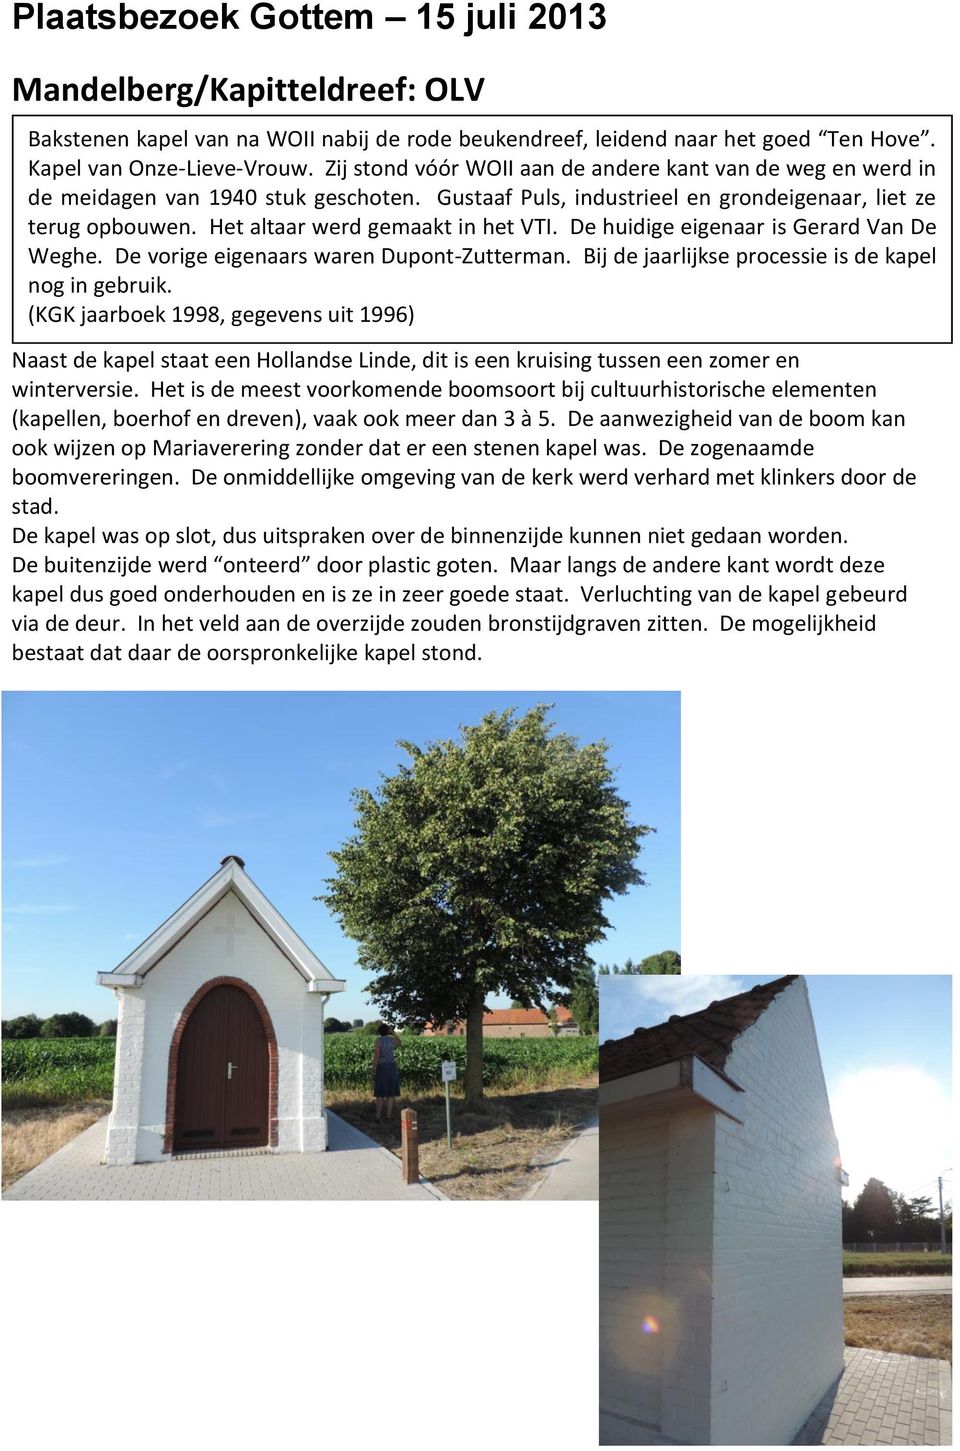 Het altaar werd gemaakt in het VTI. De huidige eigenaar is Gerard Van De Weghe. De vorige eigenaars waren Dupont-Zutterman. Bij de jaarlijkse processie is de kapel nog in gebruik.